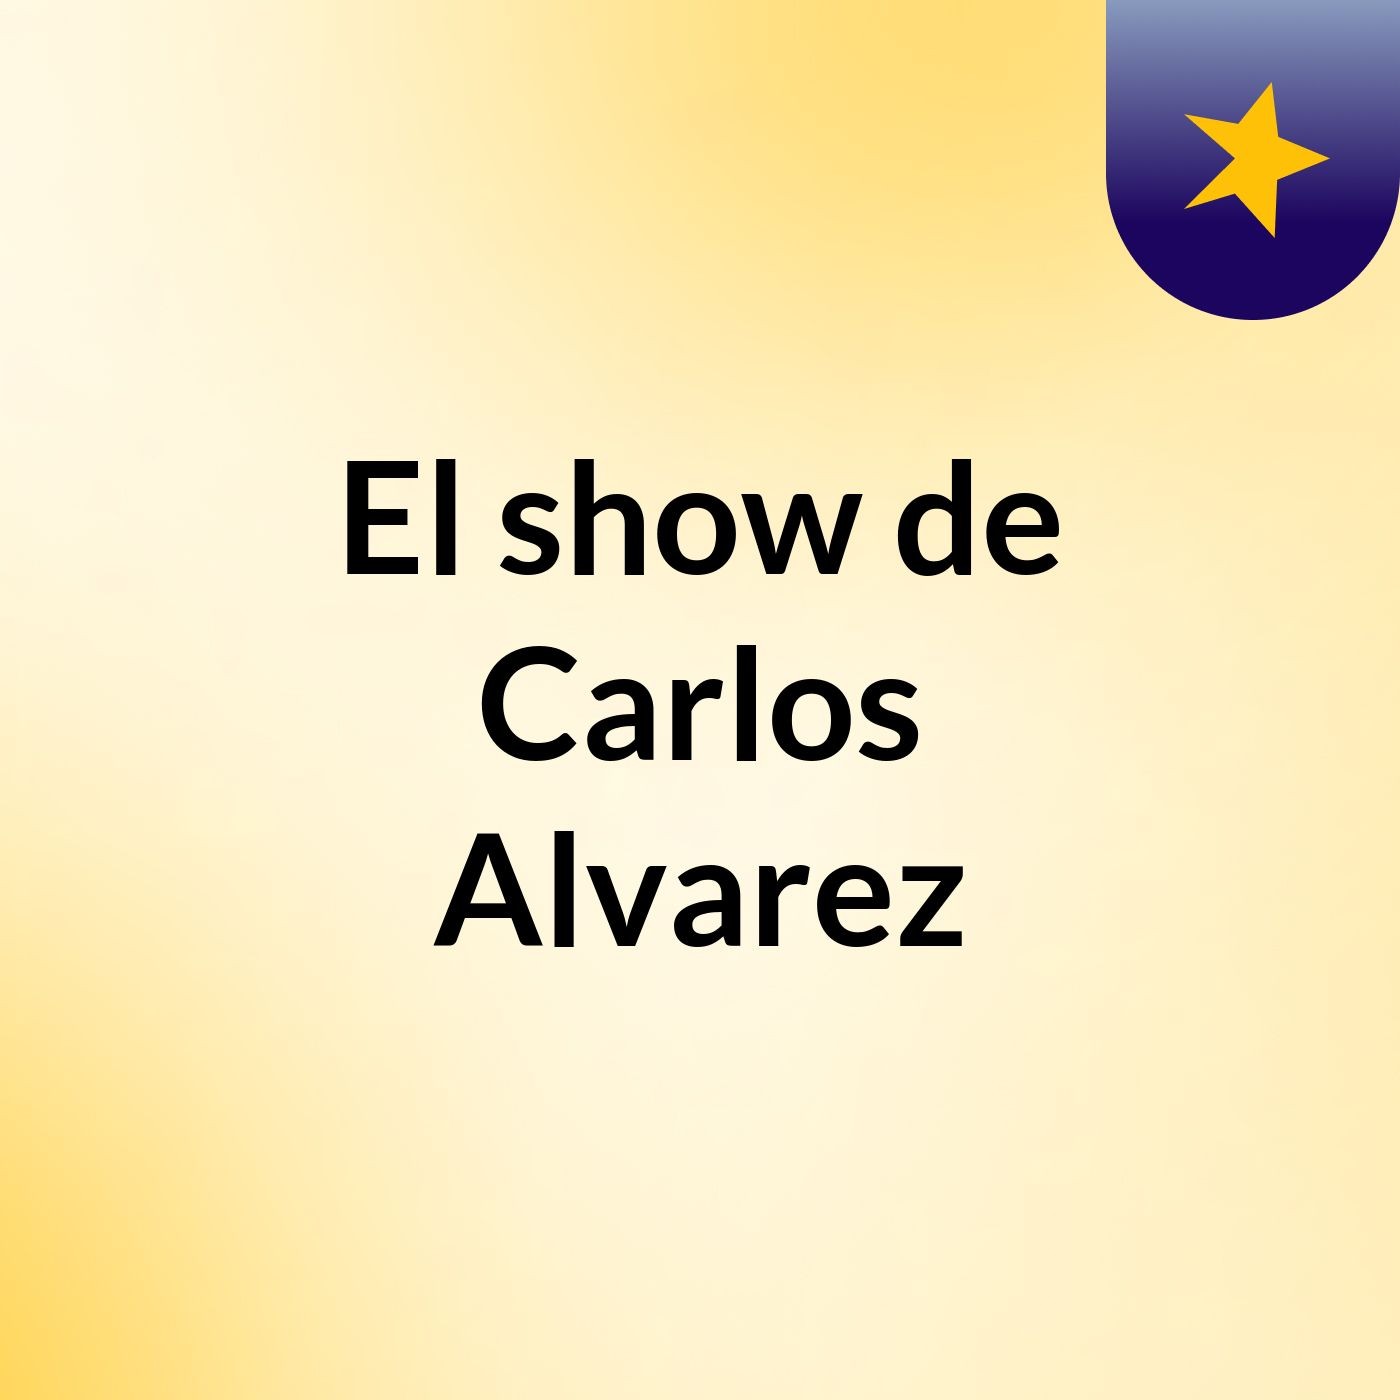 El show de Carlos Alvarez